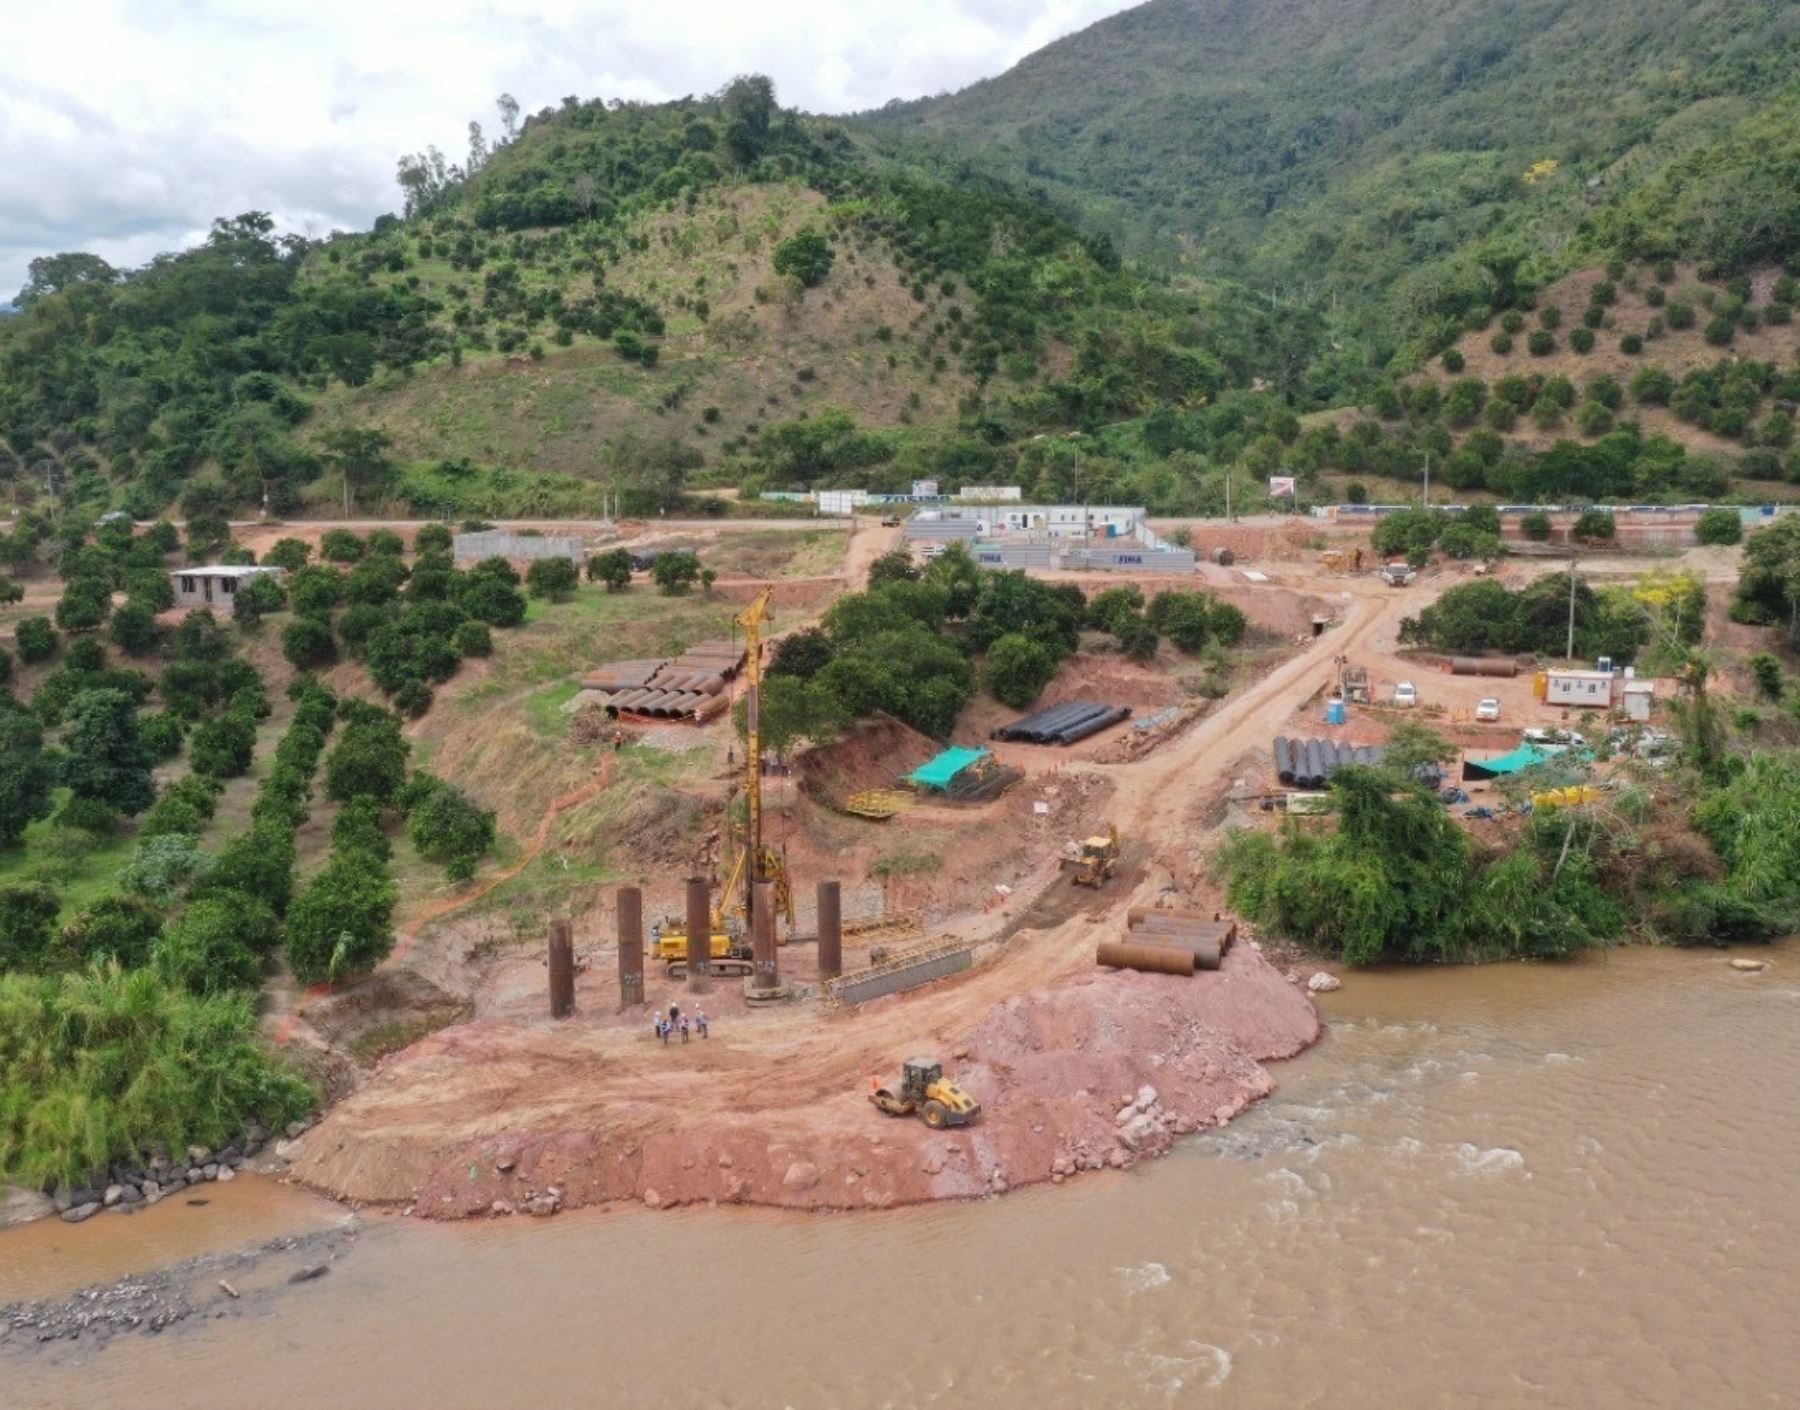 Contraloría advierte de la construcción de puente en terreno ajeno al propuesto en expediente técnico. La obra se ejecuta en el distrito de Perené, provincia de Chanchamayo, región Junín.